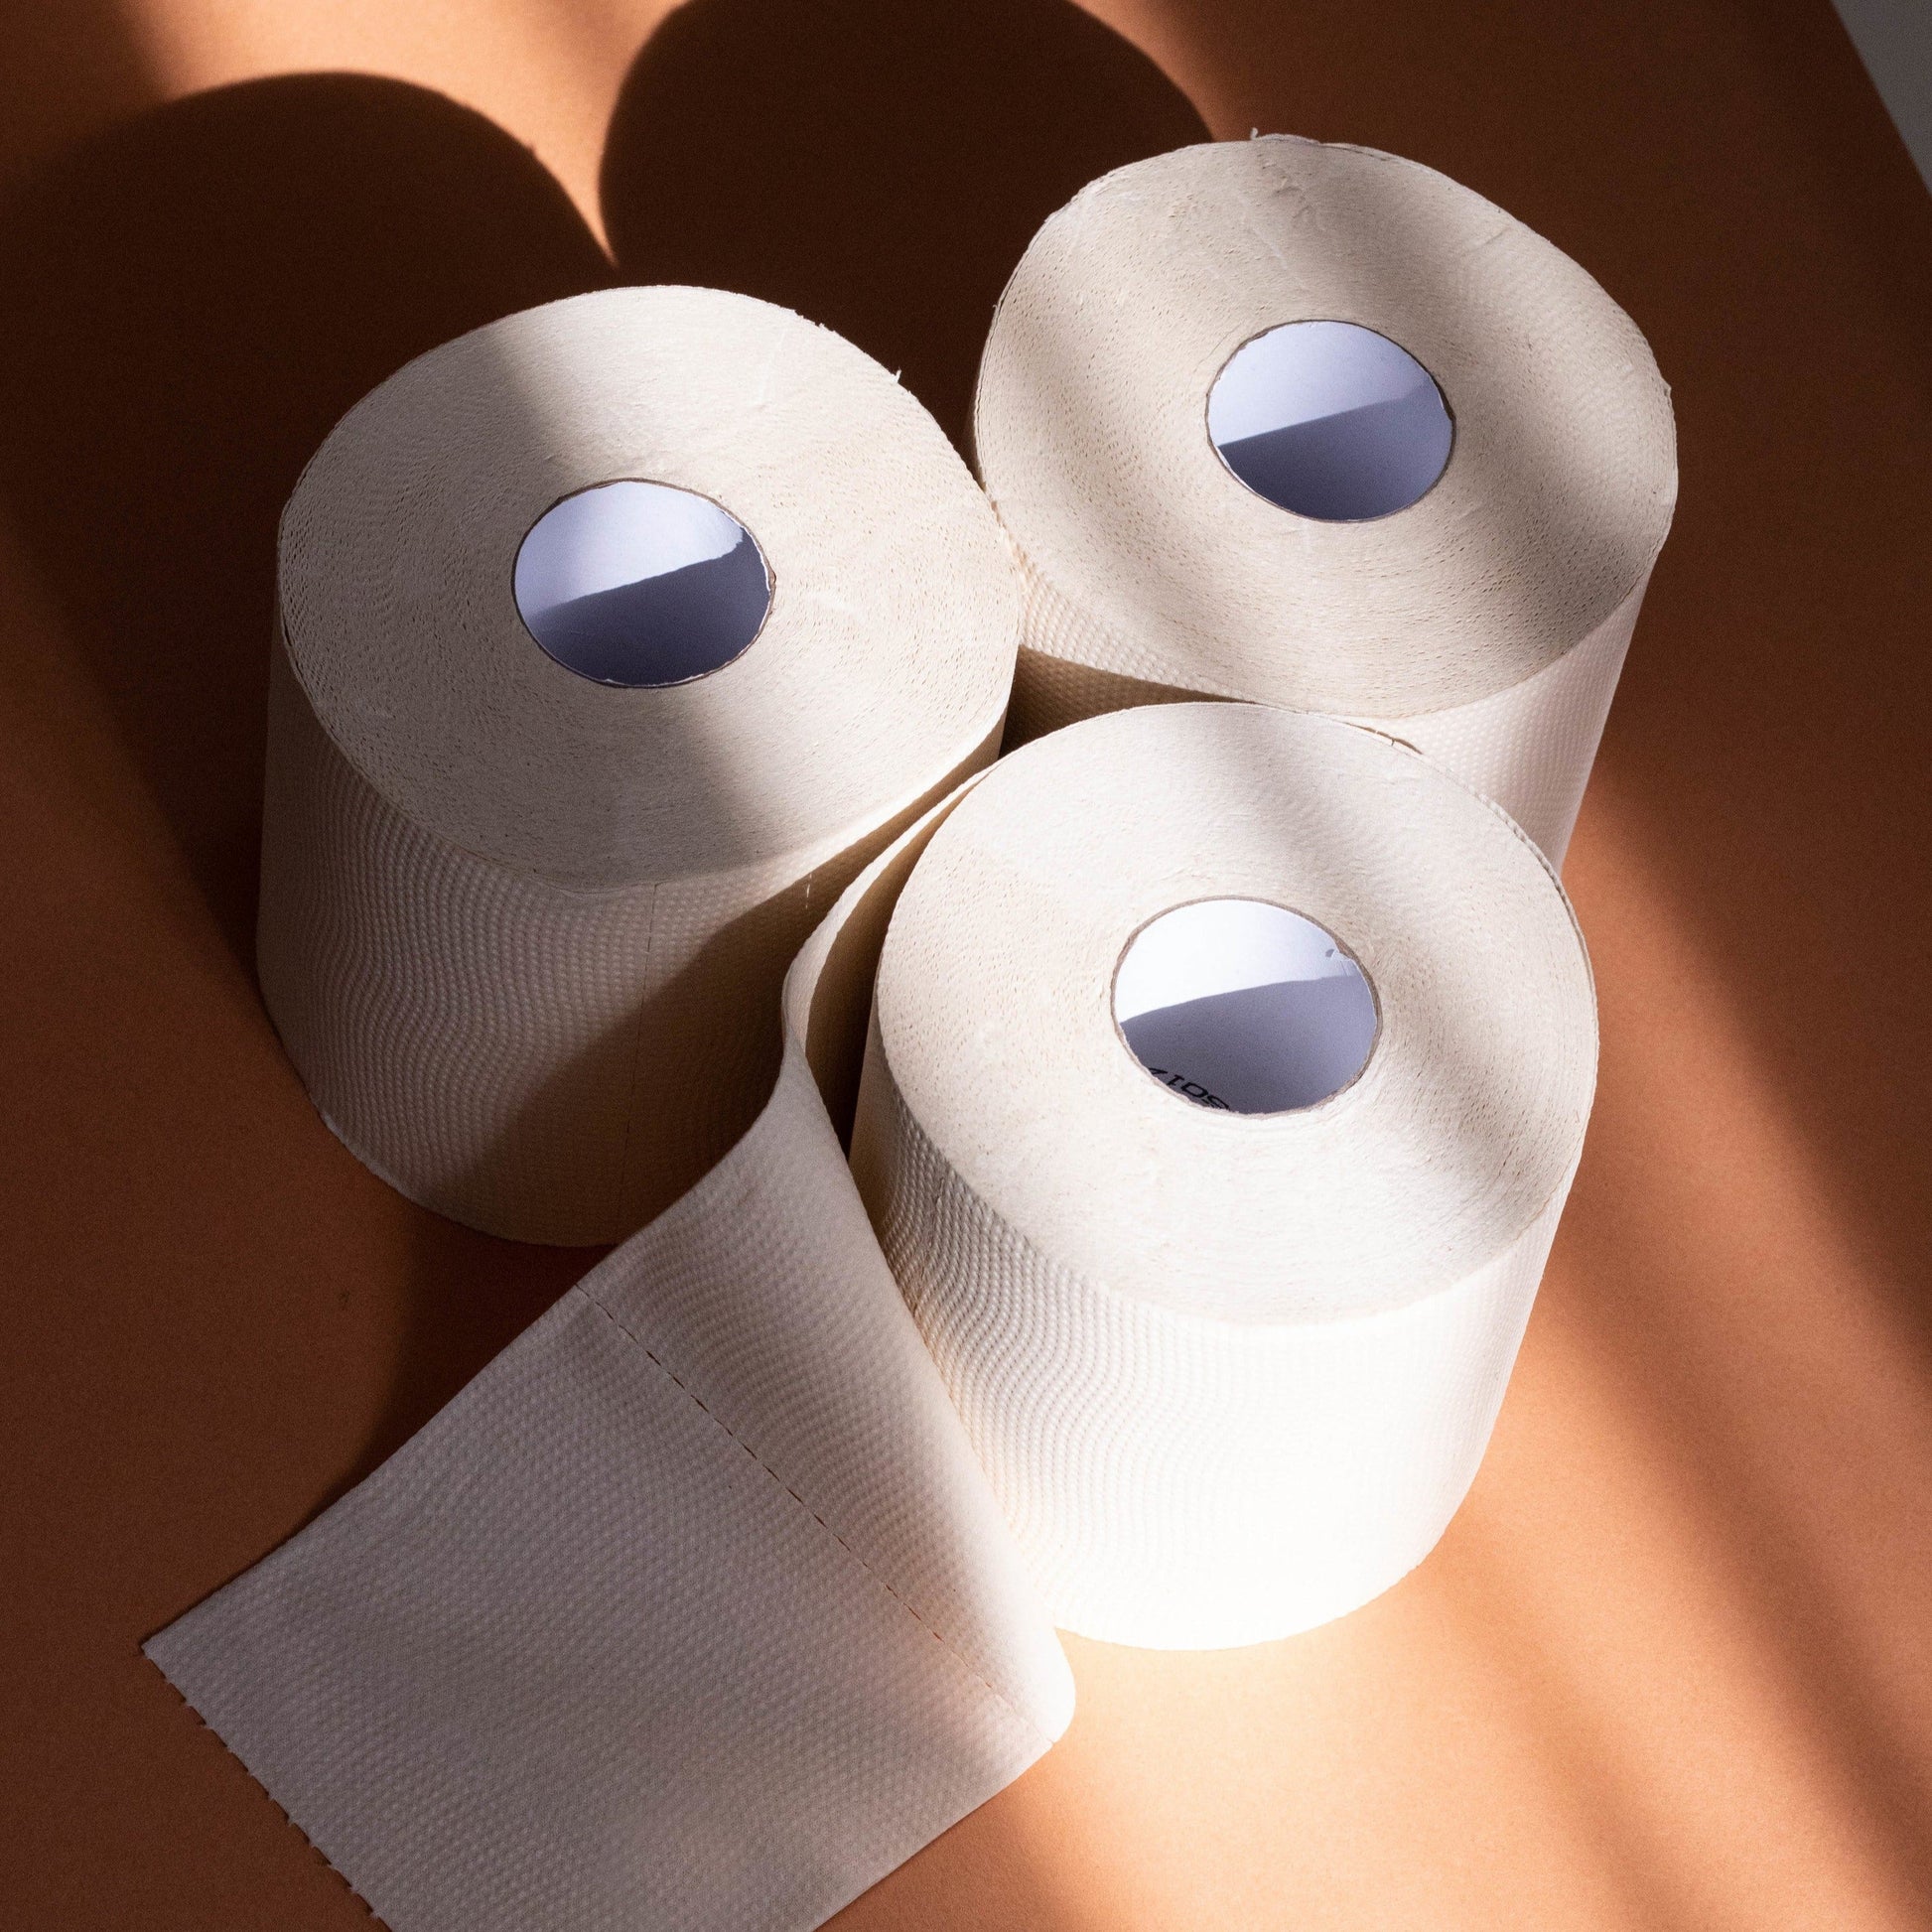 Papier toilette en bambou Jhana - Test 3 rouleaux